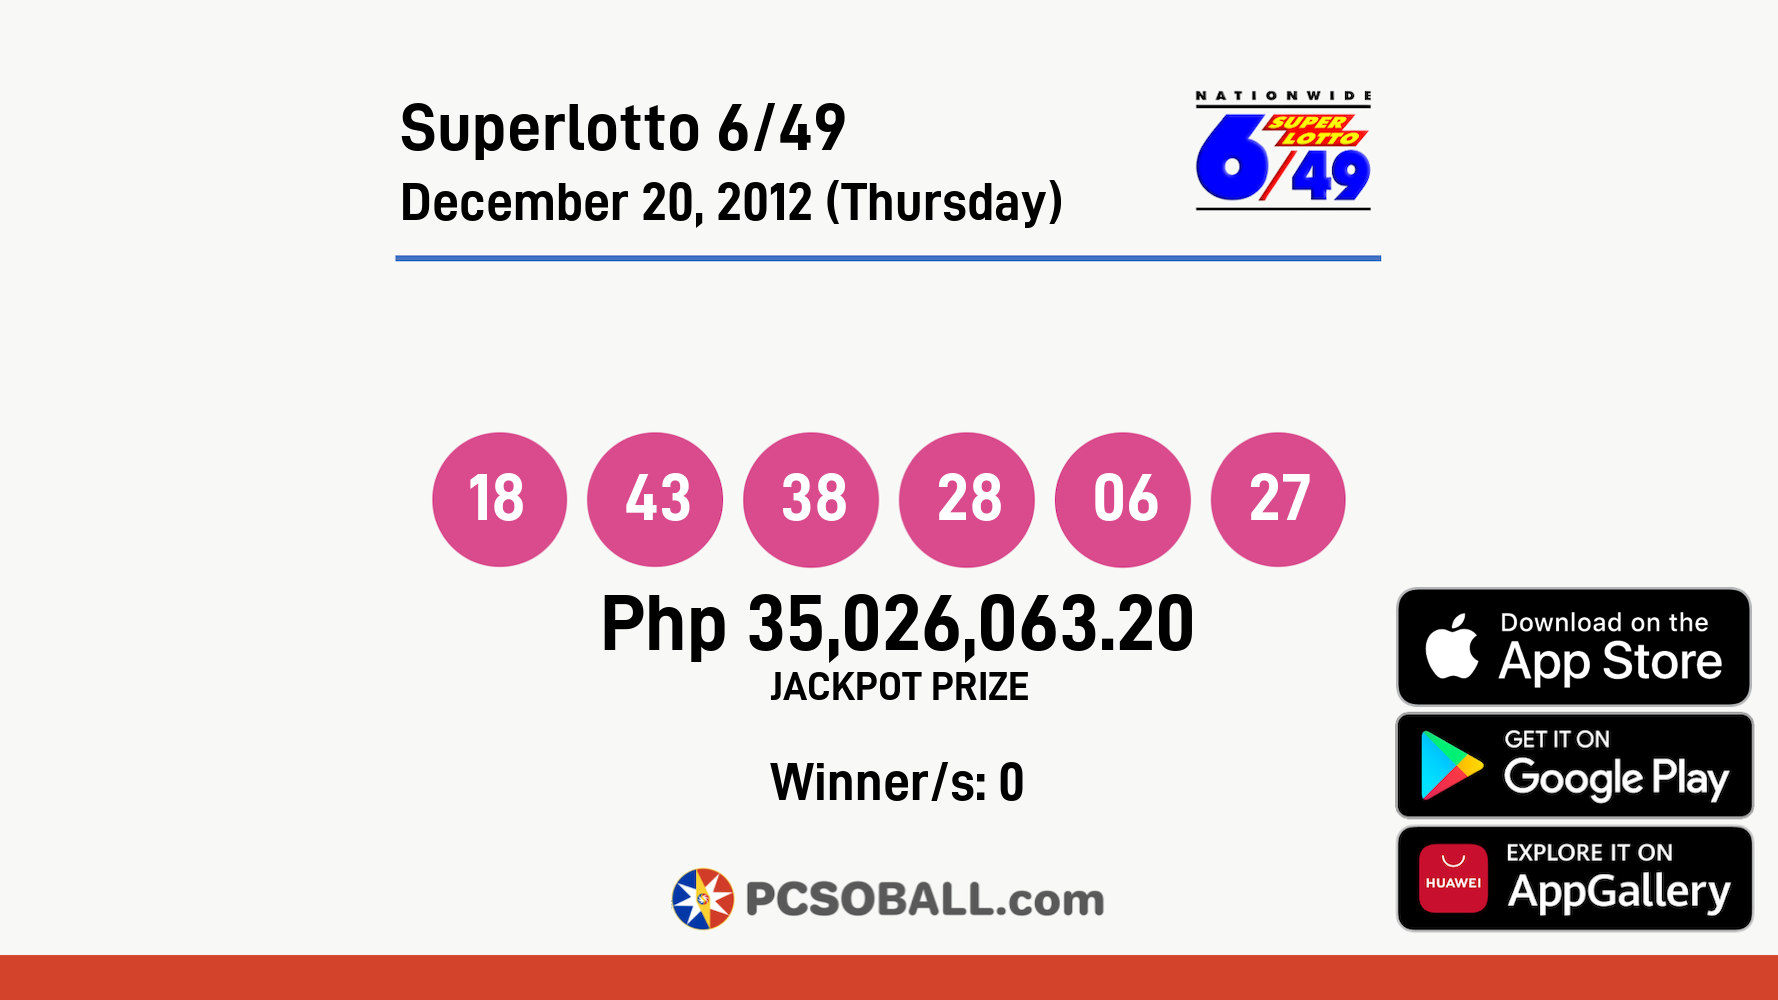 Superlotto 6/49 December 20, 2012 (Thursday) Result